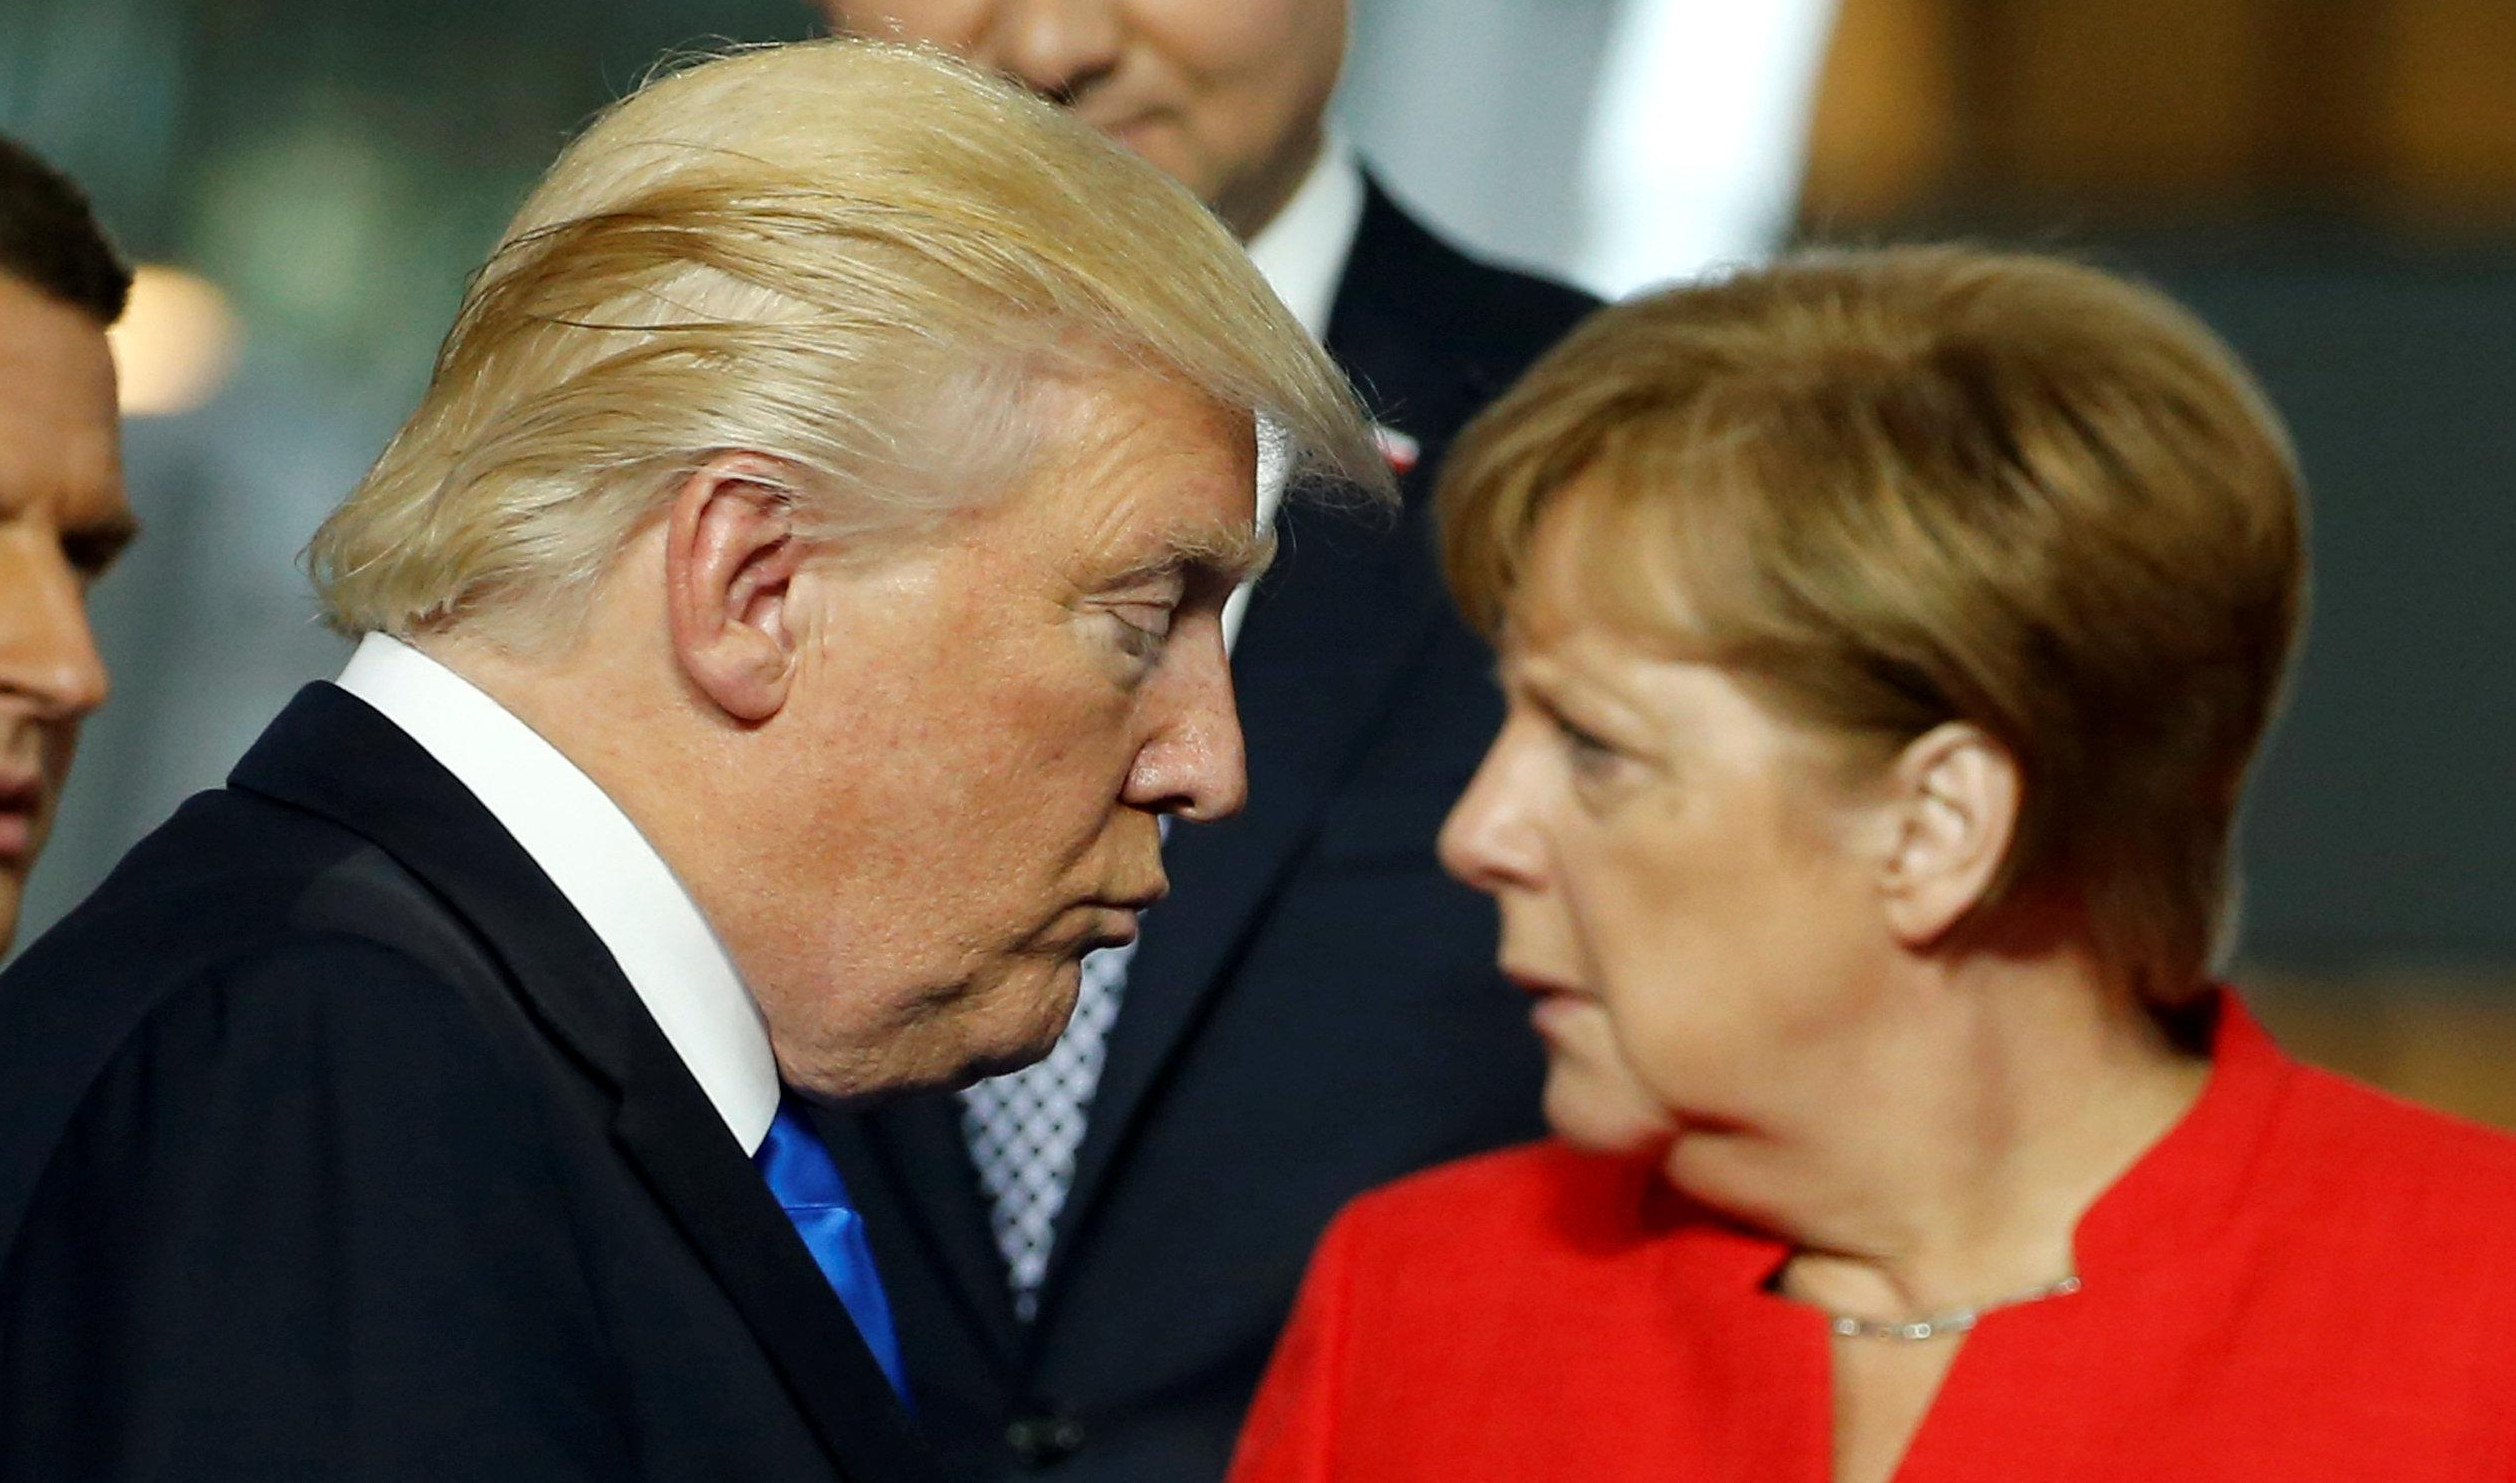 ODNOSI AMERIKE I NEMAČKE SVE LOŠIJI! Tramp pozvao Angelu na samit G7 u Vašingtonu, Merkelova odbila!